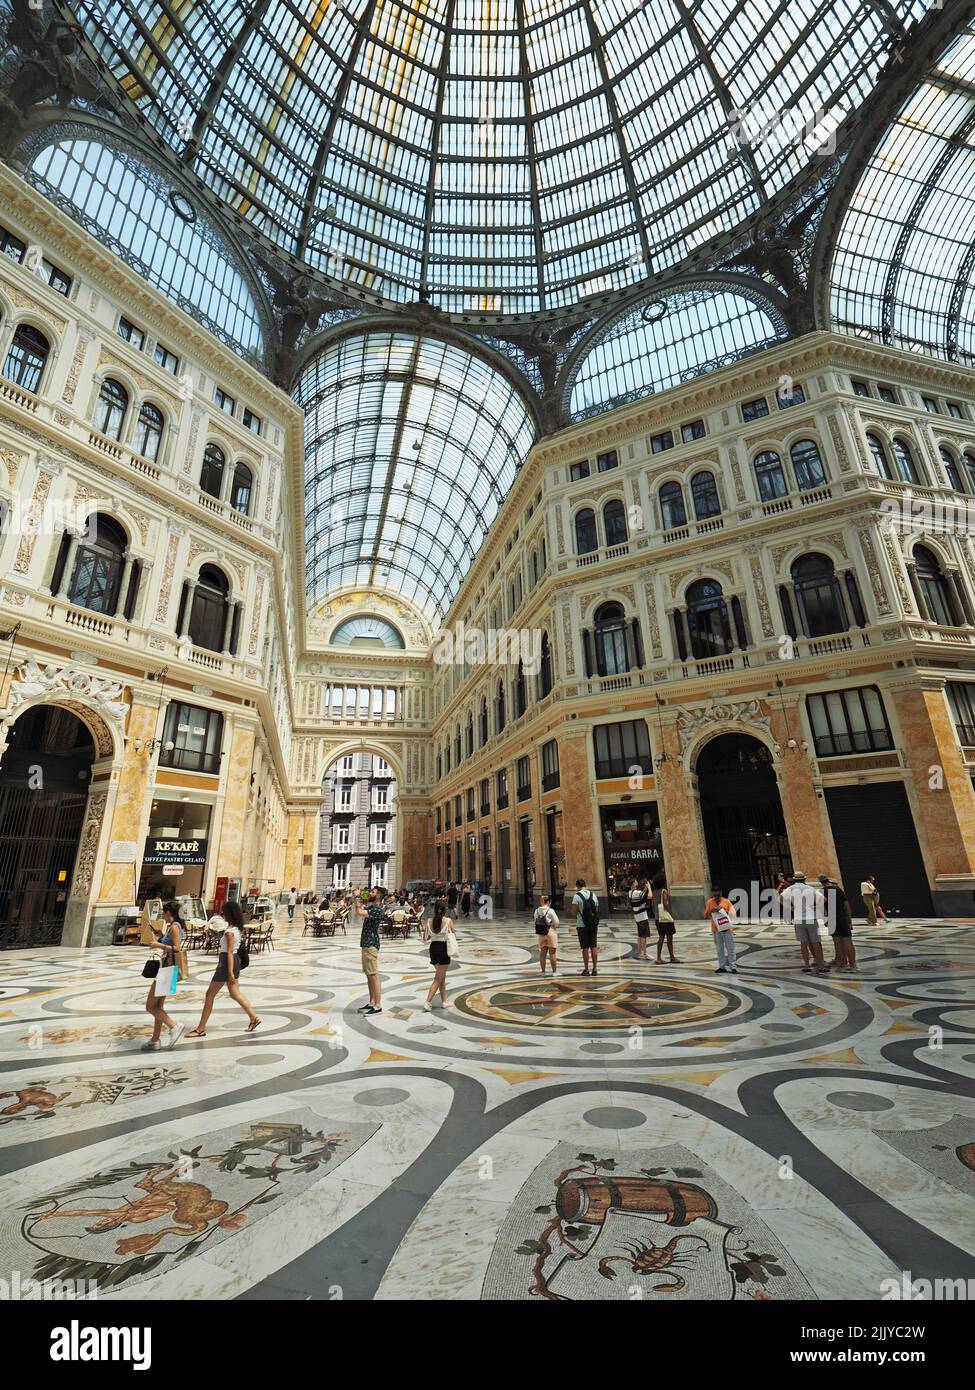 Gente de compras en el gran centro comercial Galleria Umberto 1 en el centro de la ciudad de Nápoles, Campania, Italia Foto de stock